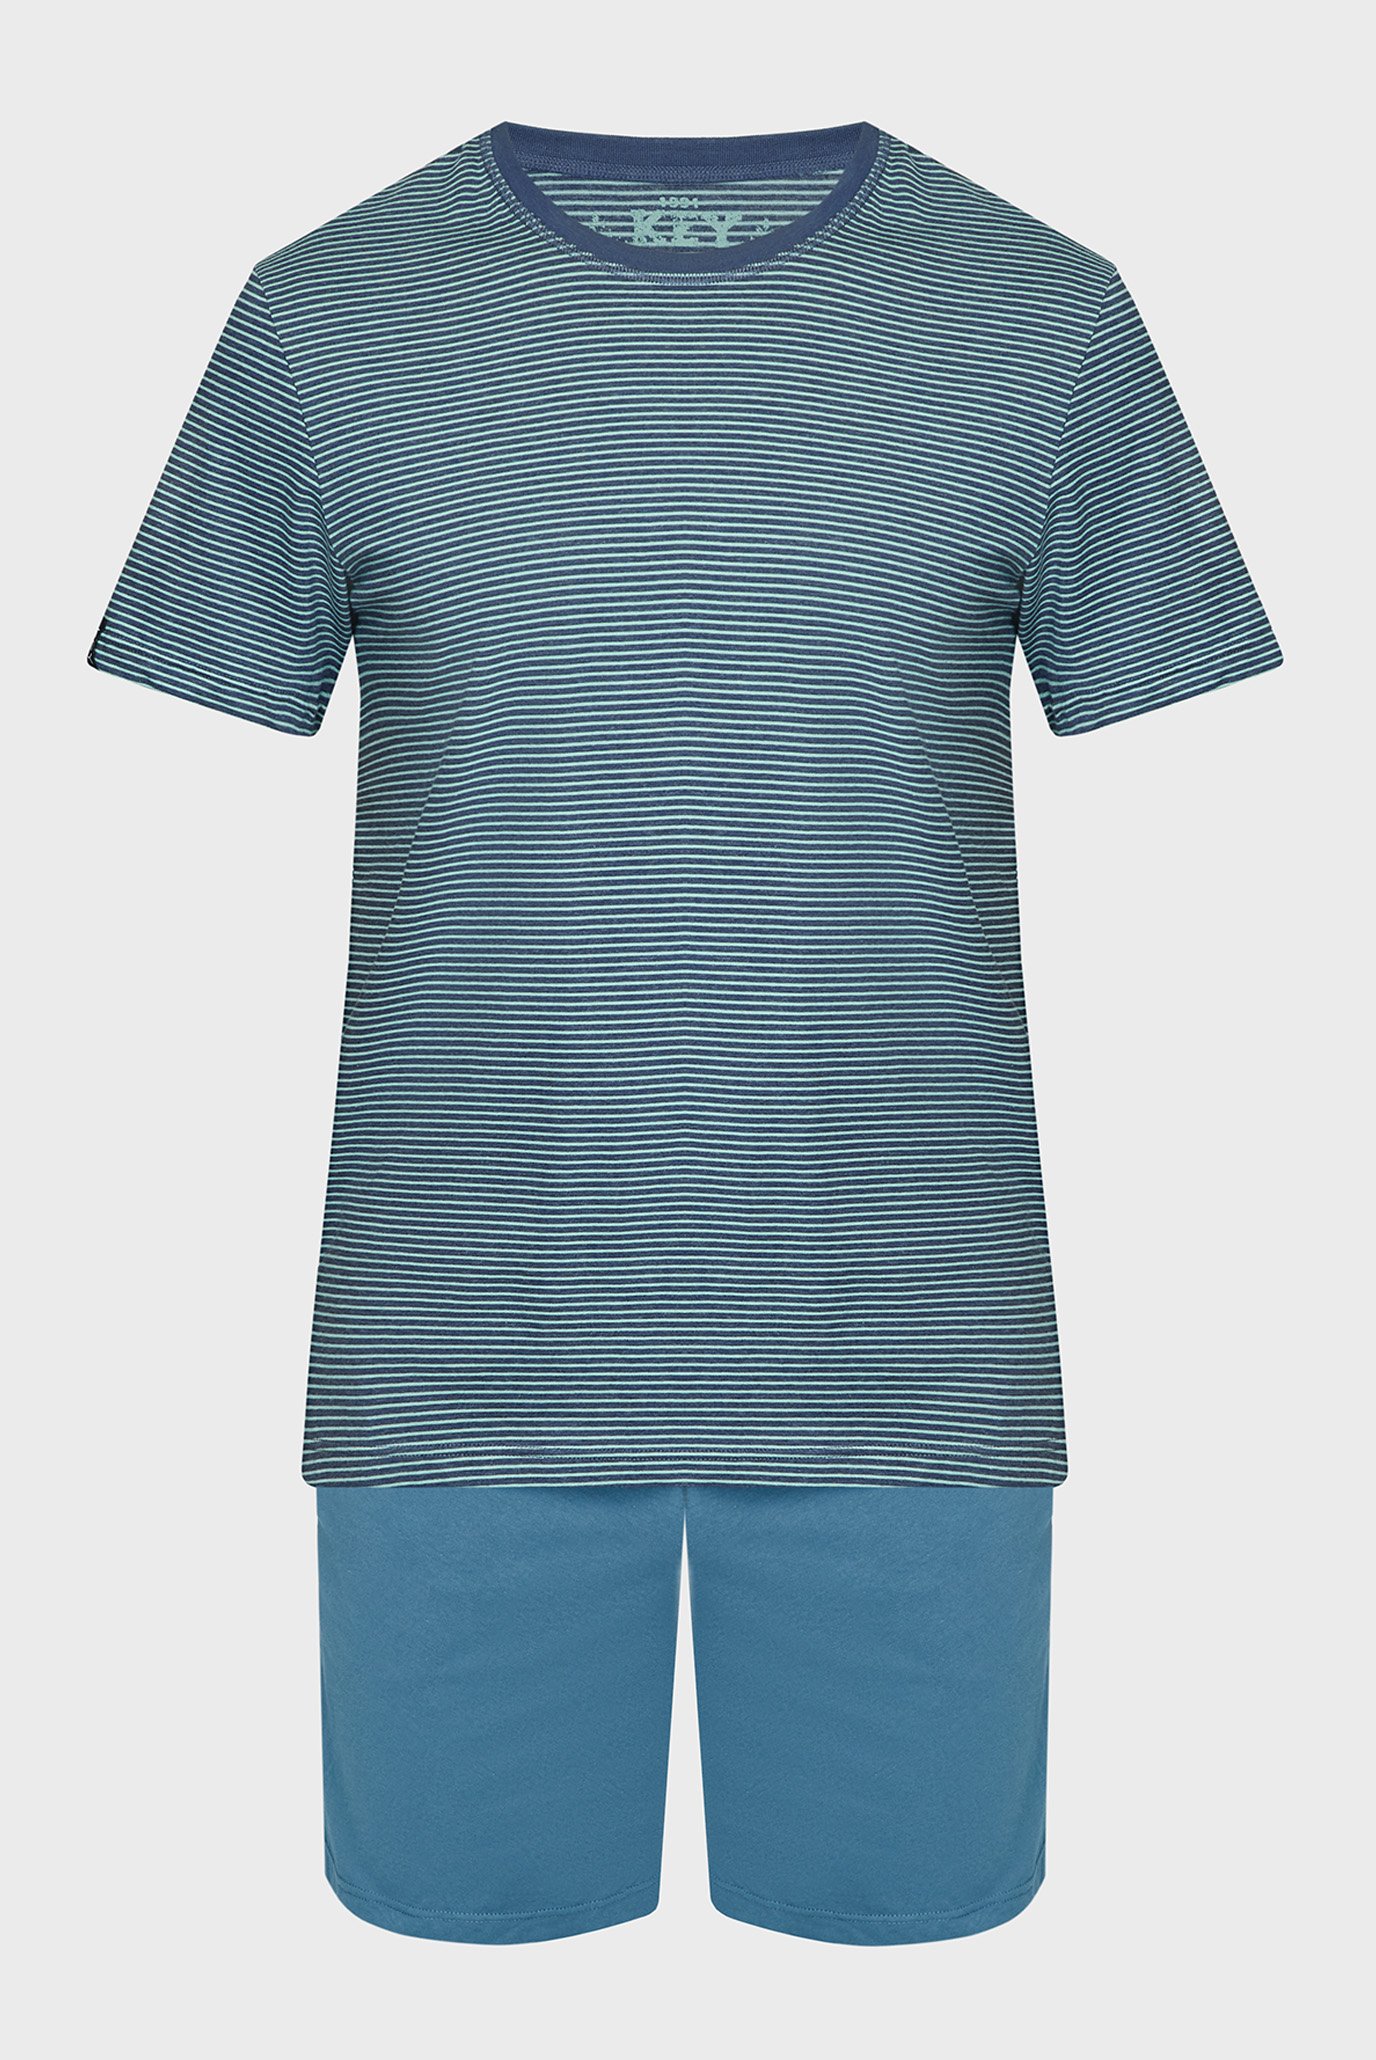 Чоловіча піжама (футболка, шорти) 1